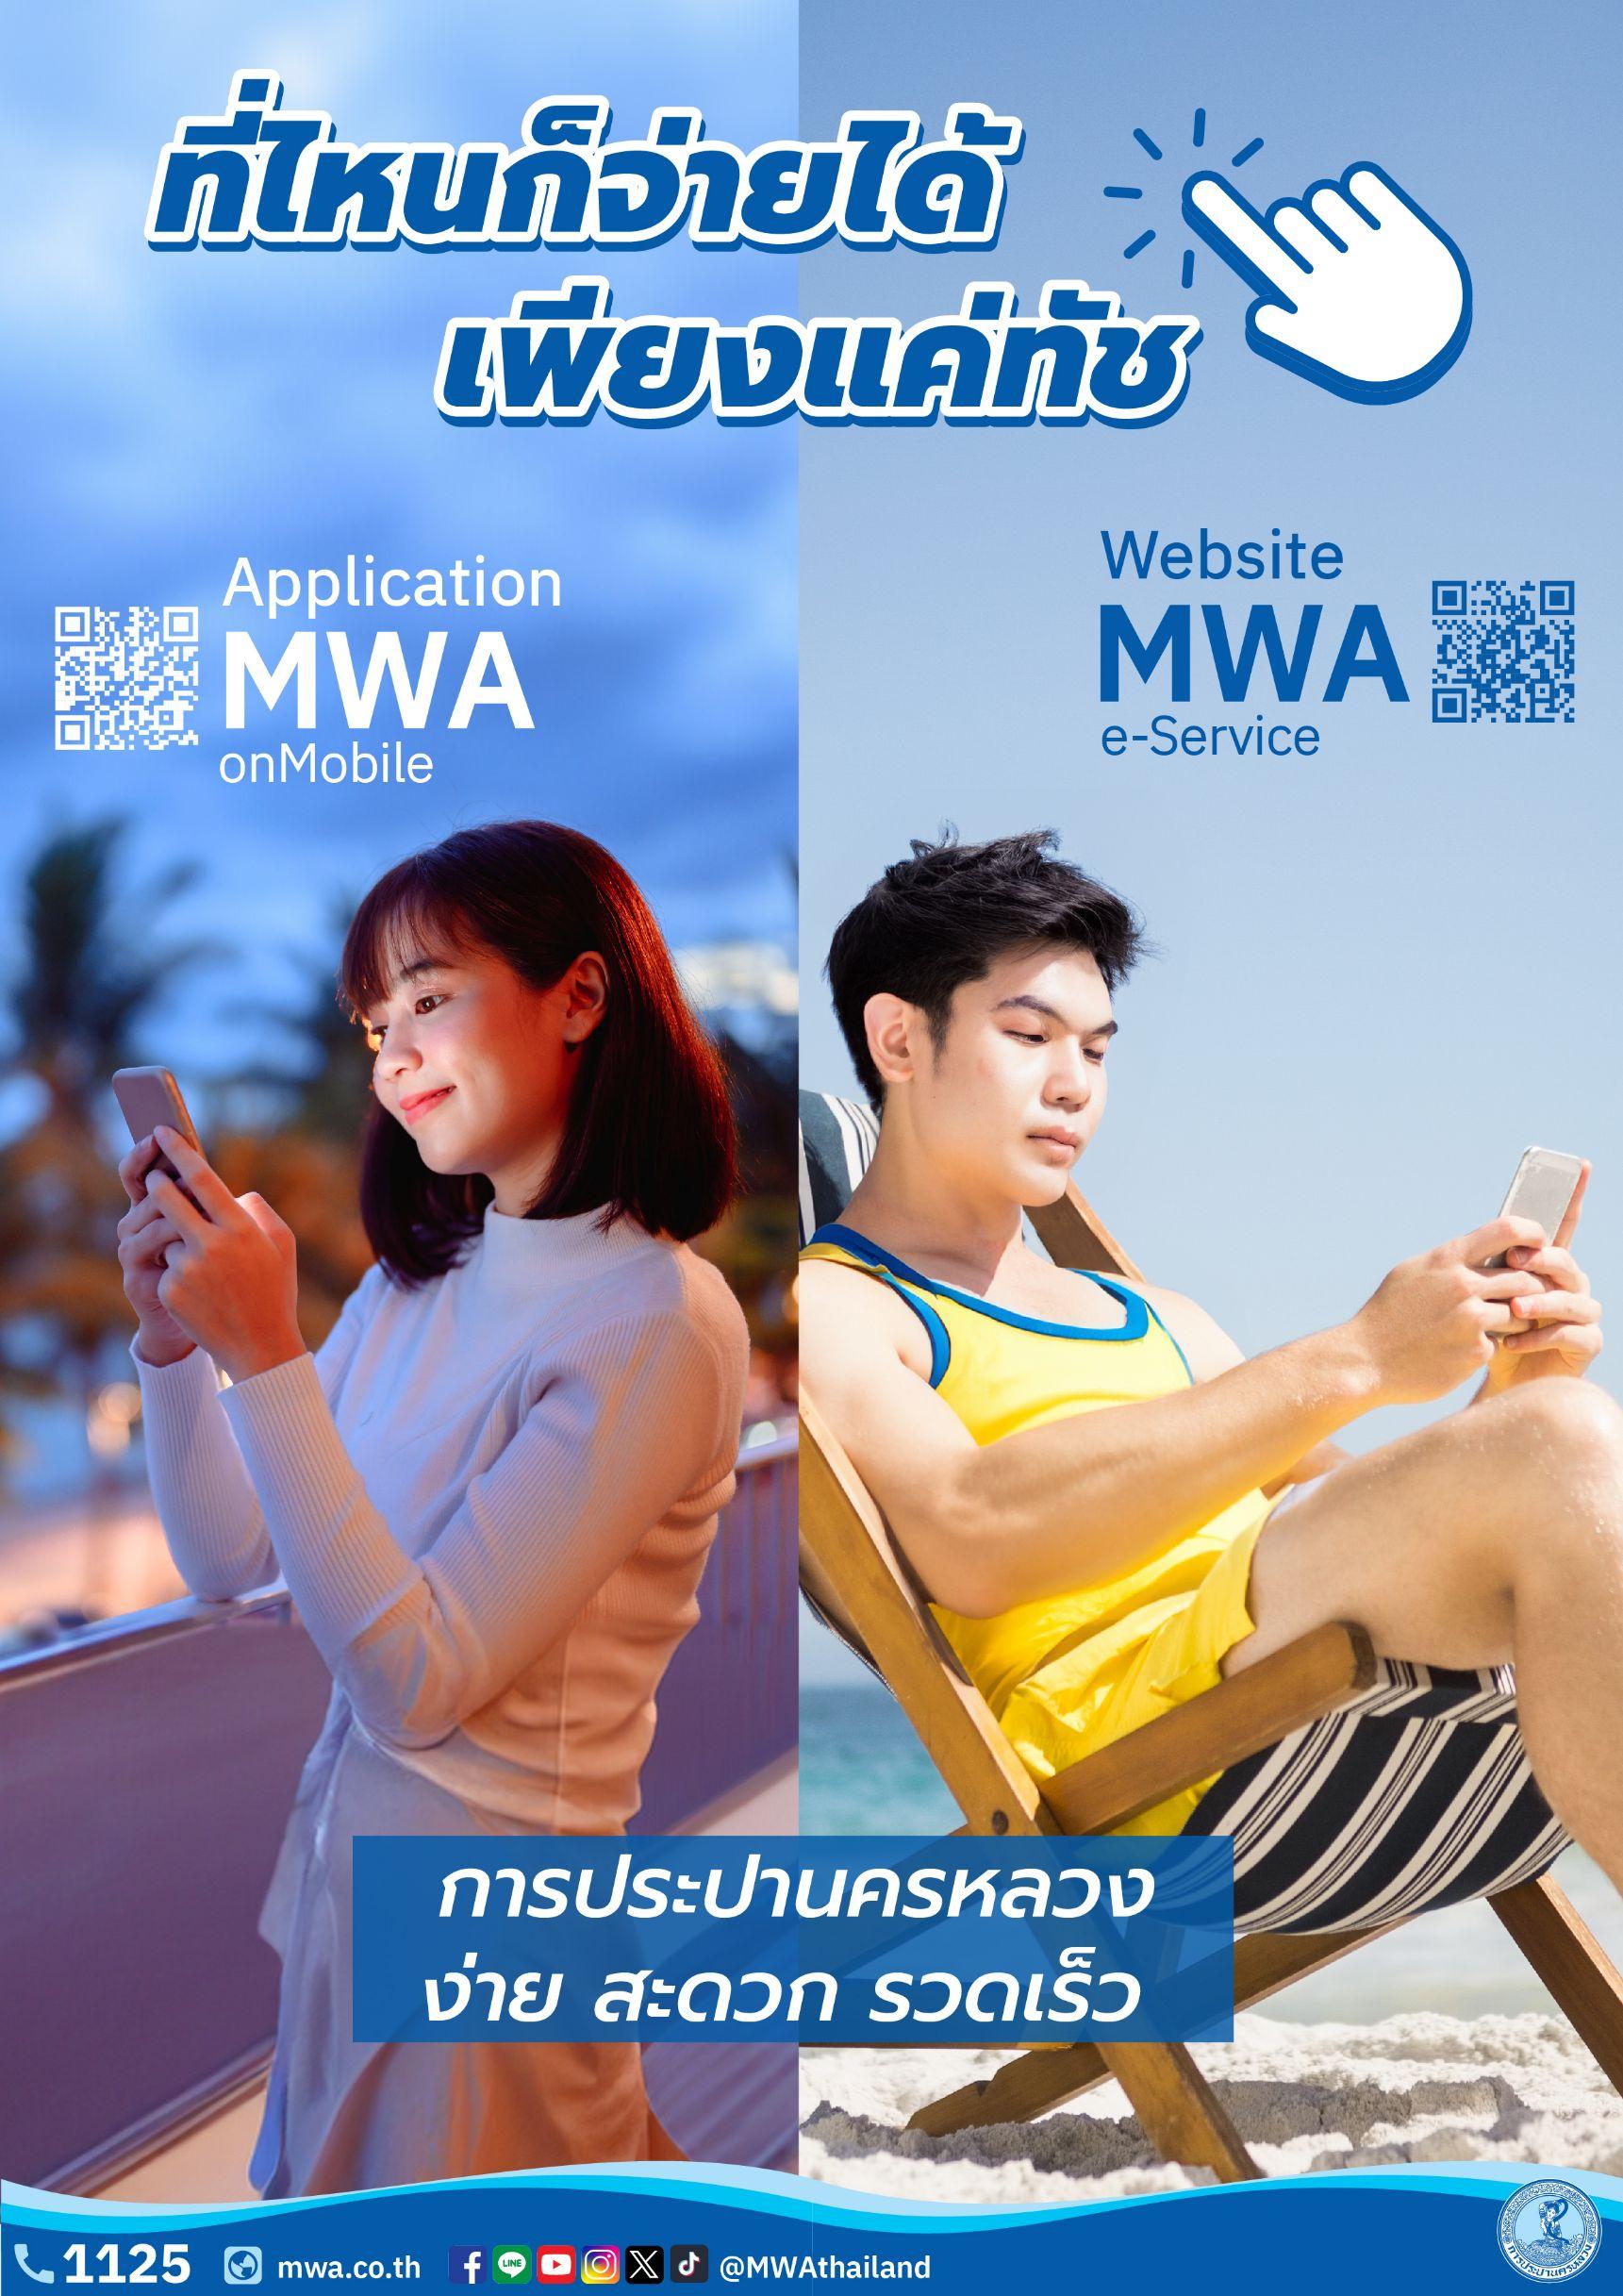 การประปานครหลวง แนะนำบริการงานประปาในรูปแบบออนไลน์ เพื่อชีวิตสะดวกสบายมากขึ้น ทั้งบริการ • แอปพลิเคชัน MWA onMobile และ • เว็บไซต์ MWA e-Service